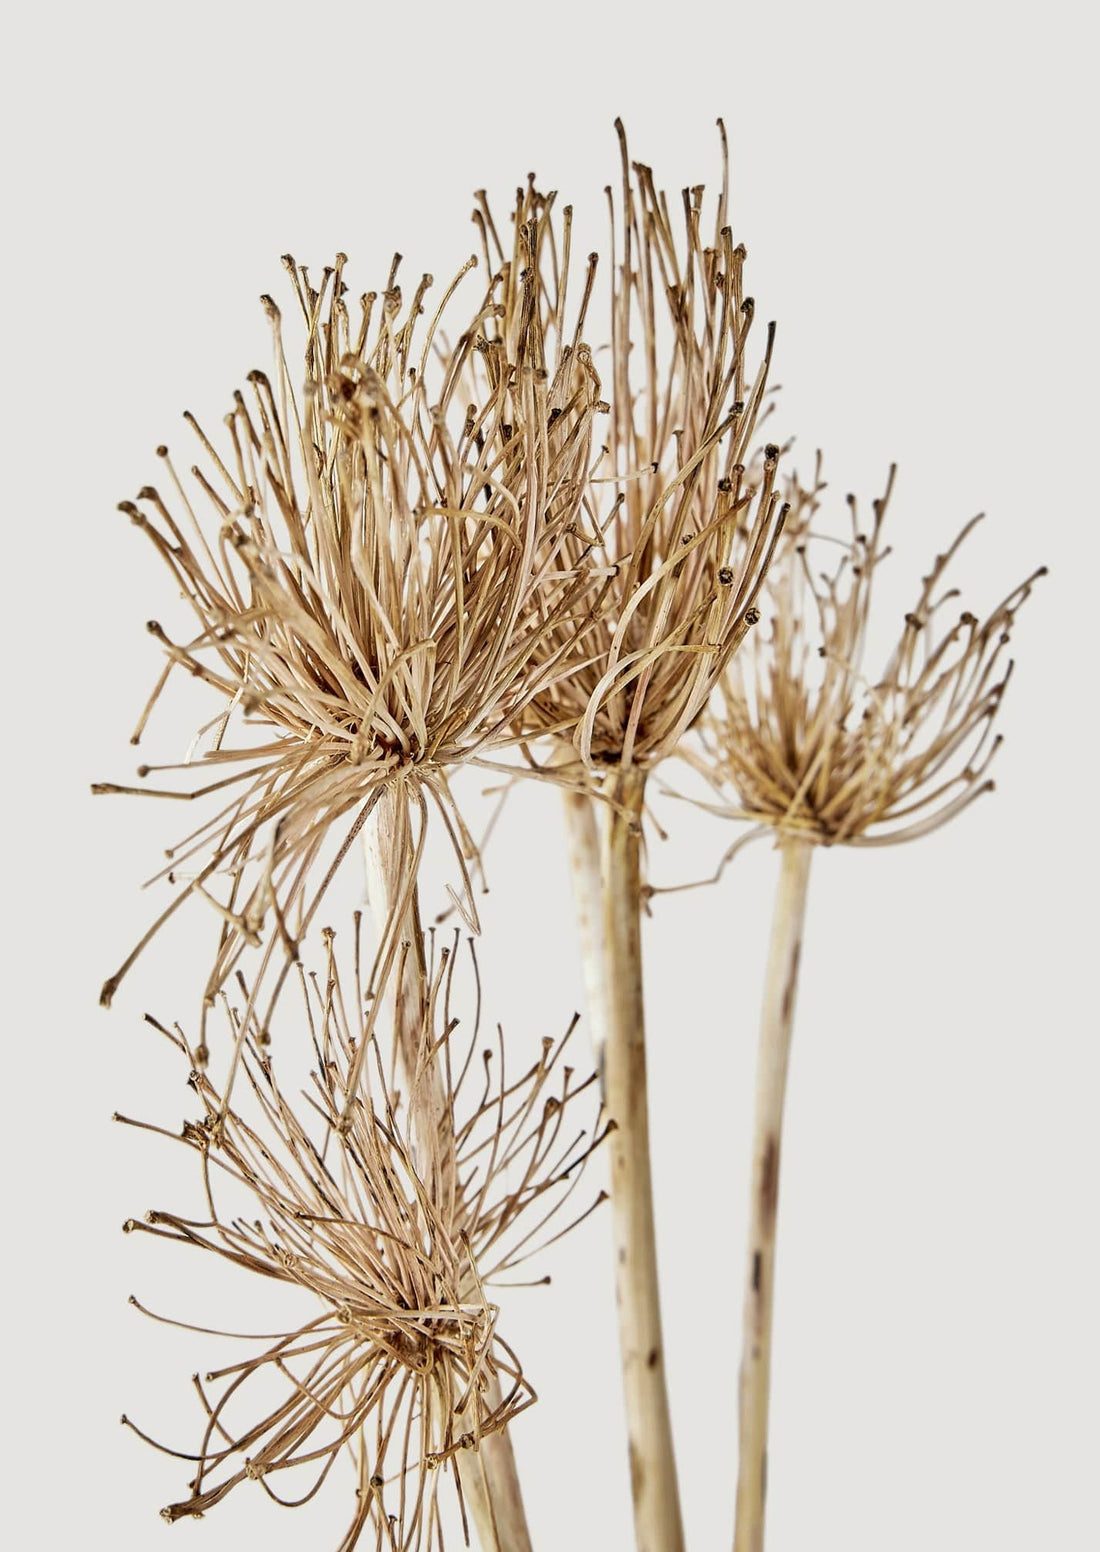 Afloral Closeup of Natural Dried Allium Blooms